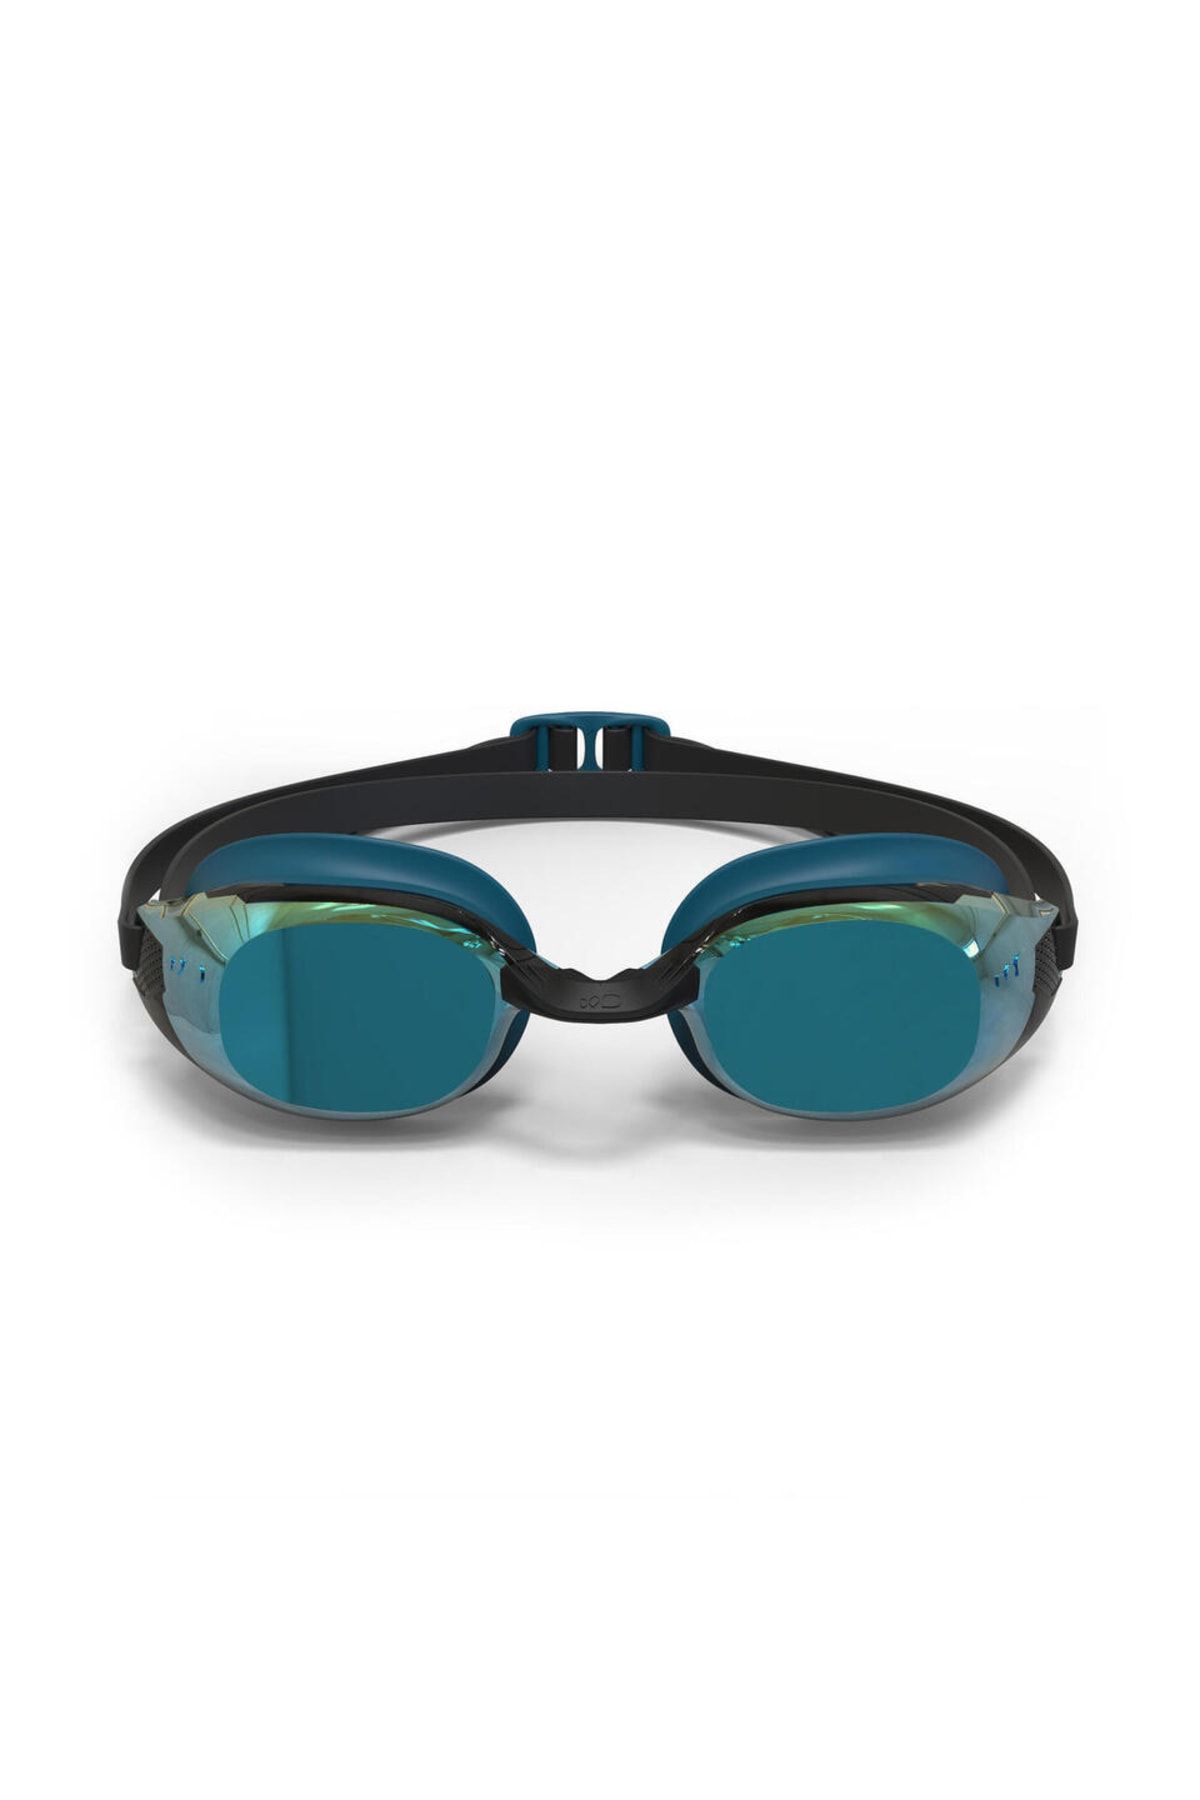 Decathlon Nabaiji Aynalı Camlı Yüzücü Gözlüğü - Mavi / Siyah - Bfıt